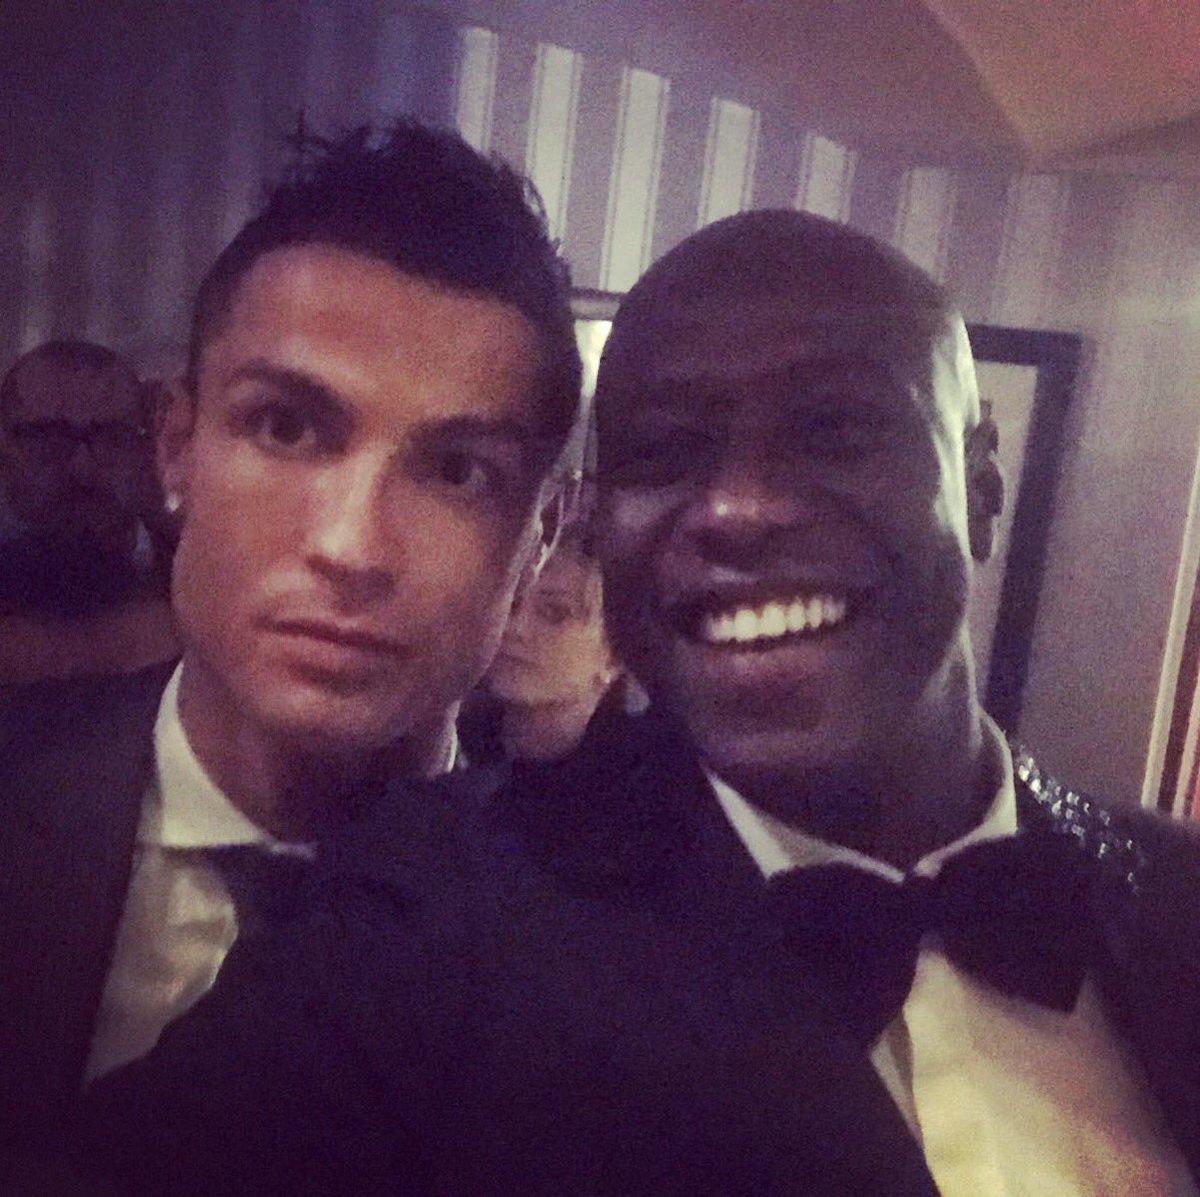 Selfie de Fadiga et Christiano Ronaldo